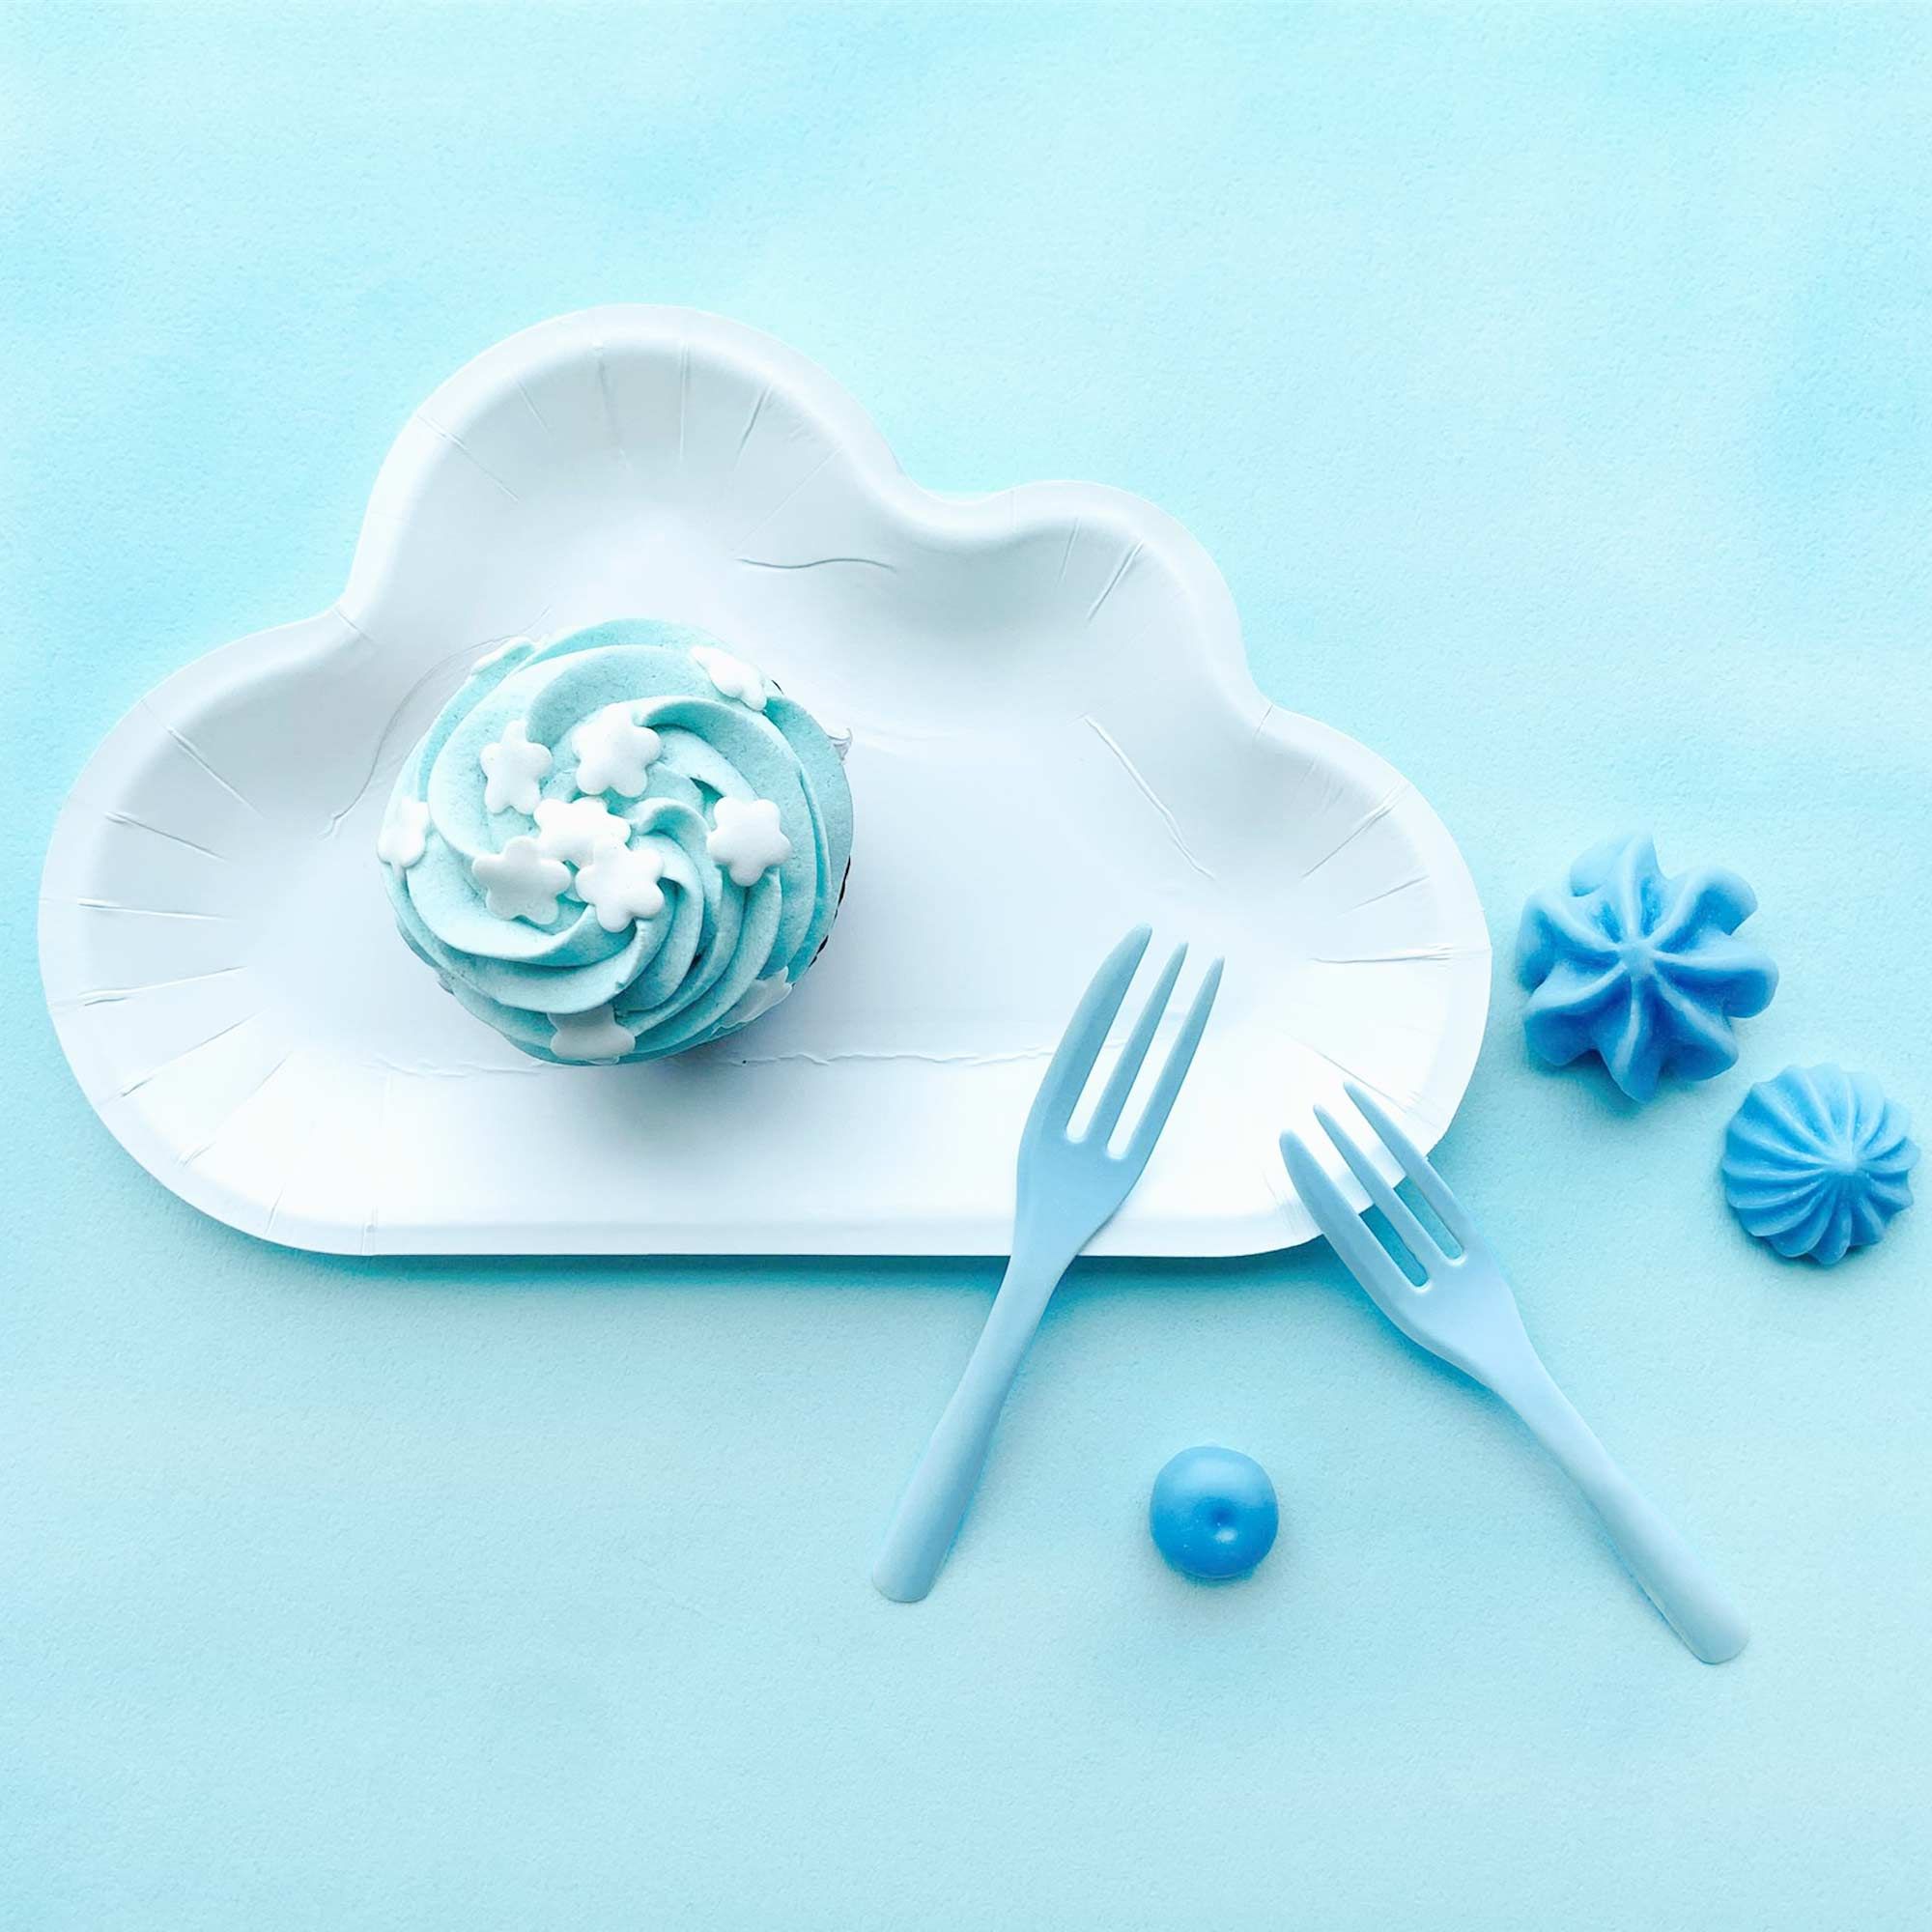 Bộ dĩa hình đám mây màu trắng kết hợp với dĩa bánh màu xanh tạo ra một bầu không khí gợi nhớ đến bầu trời xanh với những đám mây mịn màng.